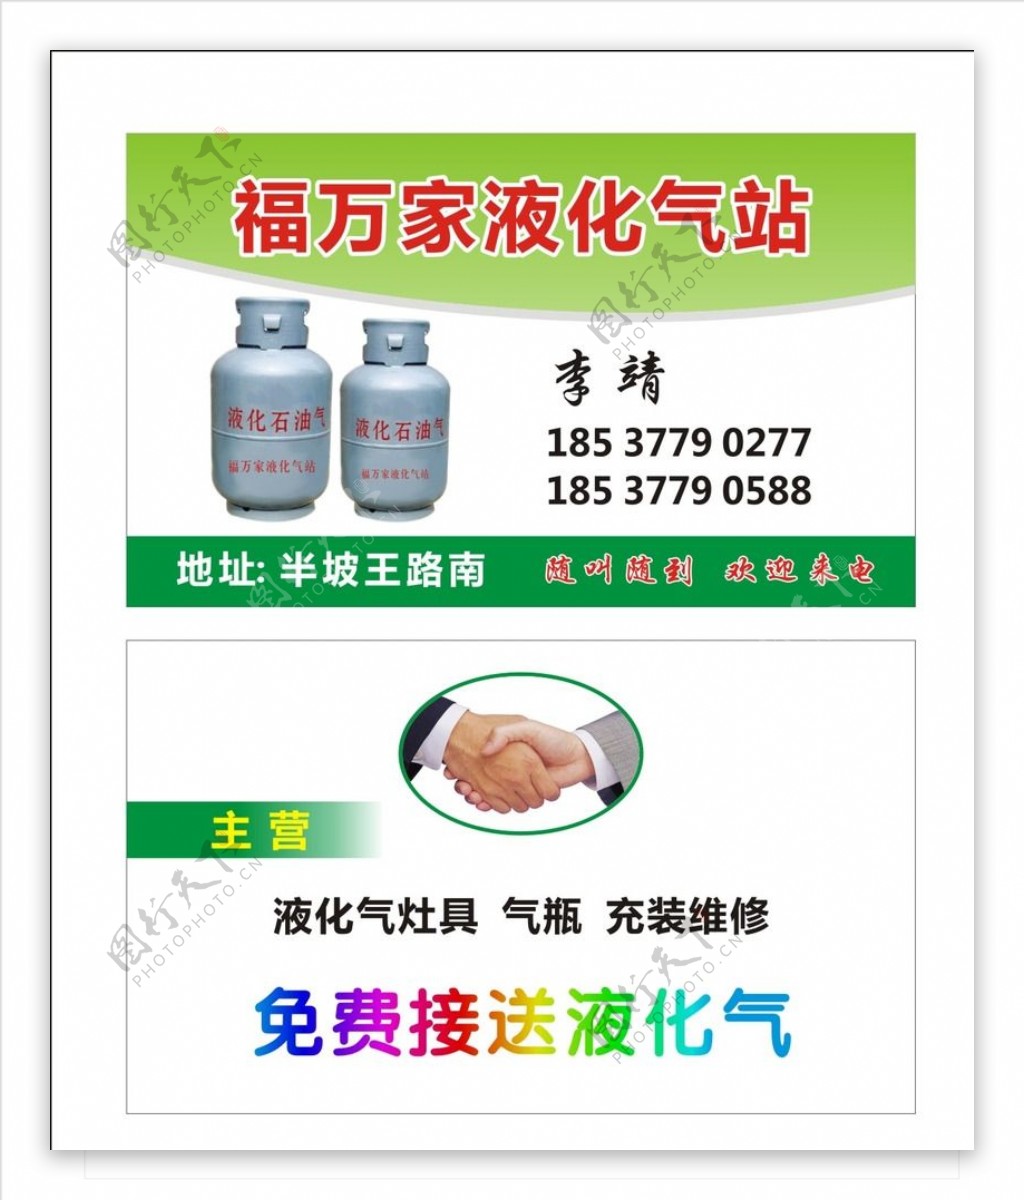 唐城广告液化气名片图片